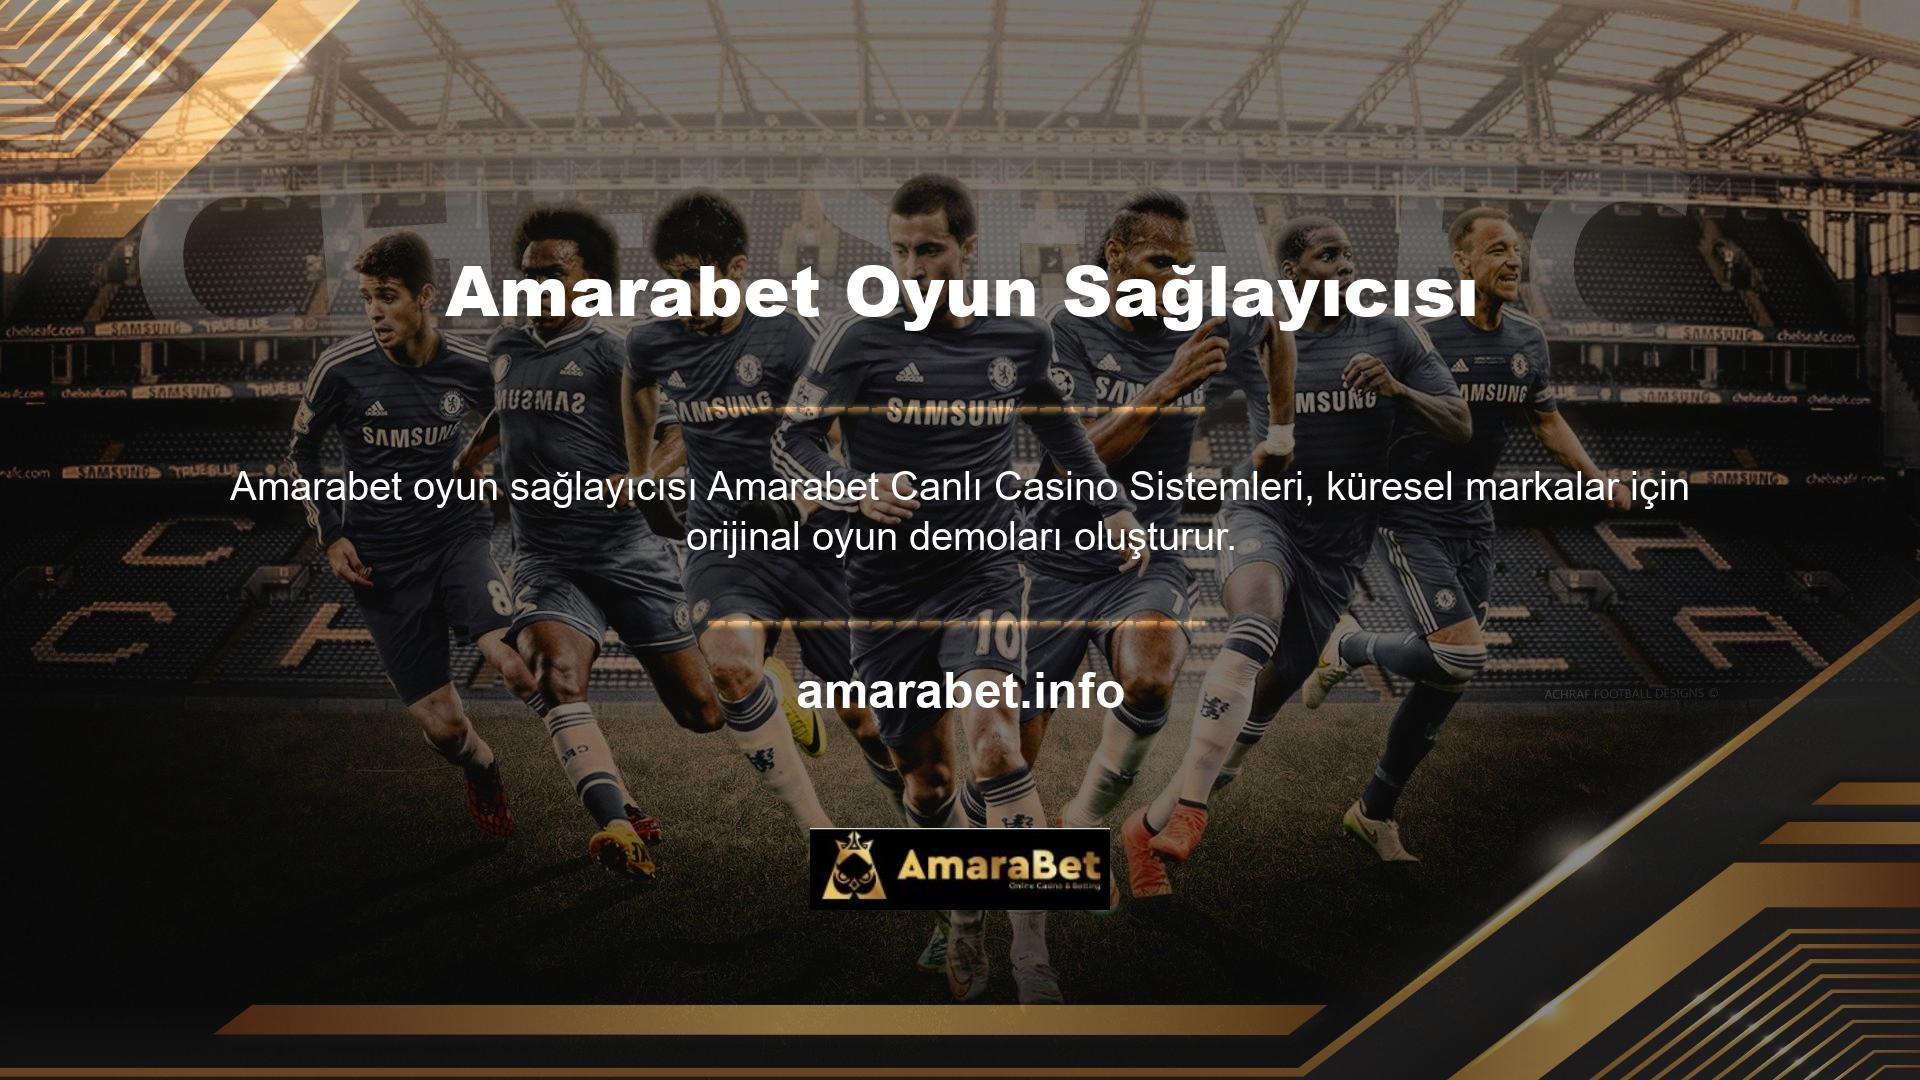 Amarabet VIP üyelik programı ücretsizdir